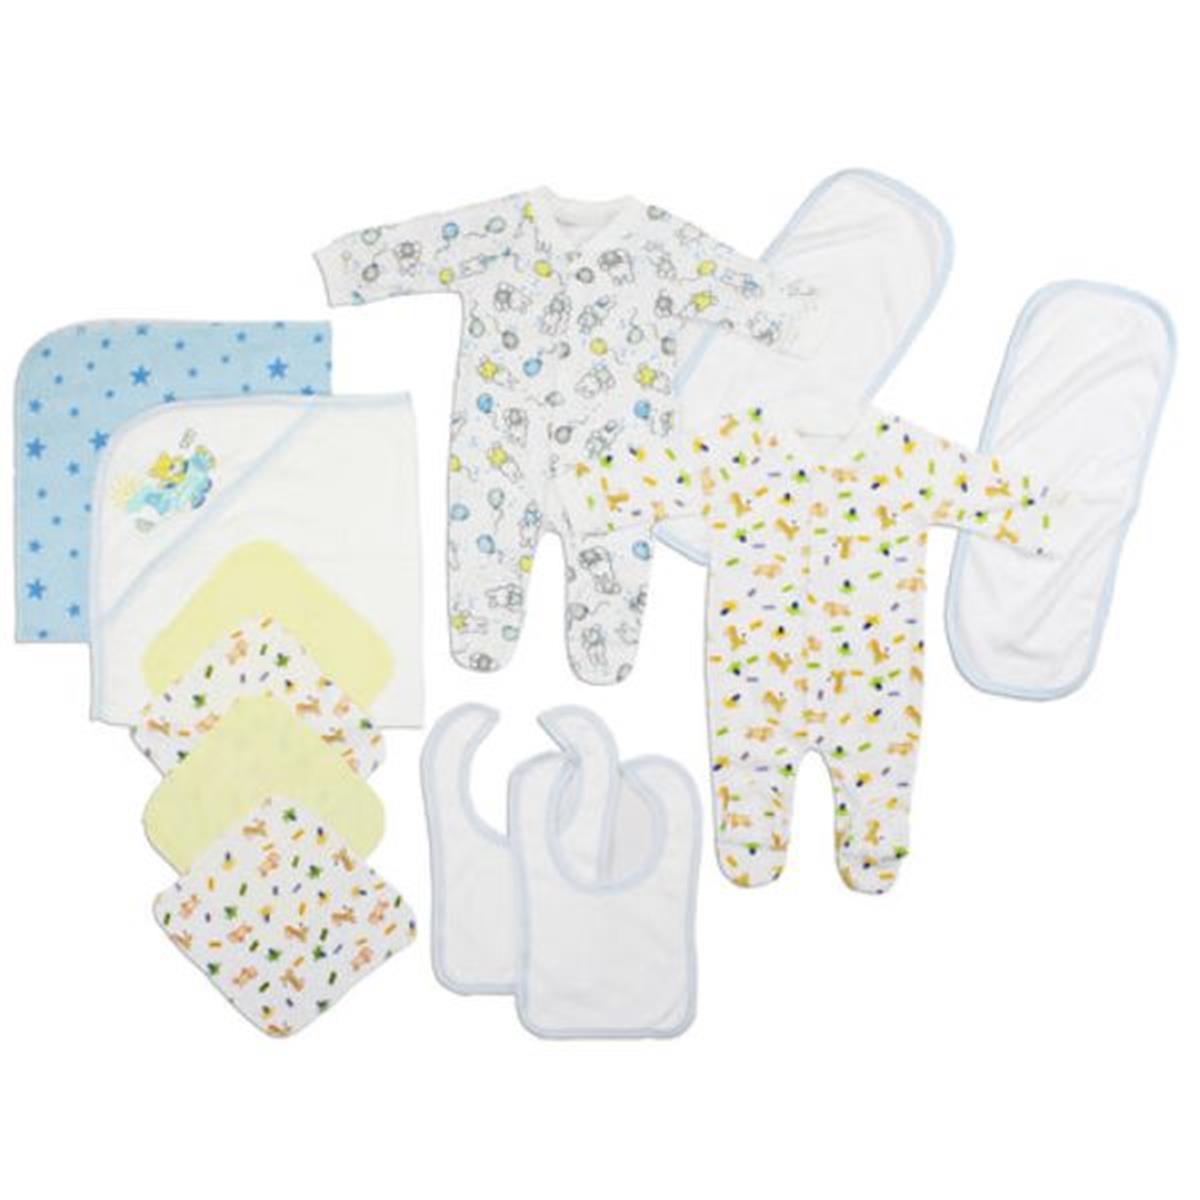 Bambini LS-0106 Newborn Baby Boys Layette Baby Shower Gift Set&#44; White & Blue - Newborn